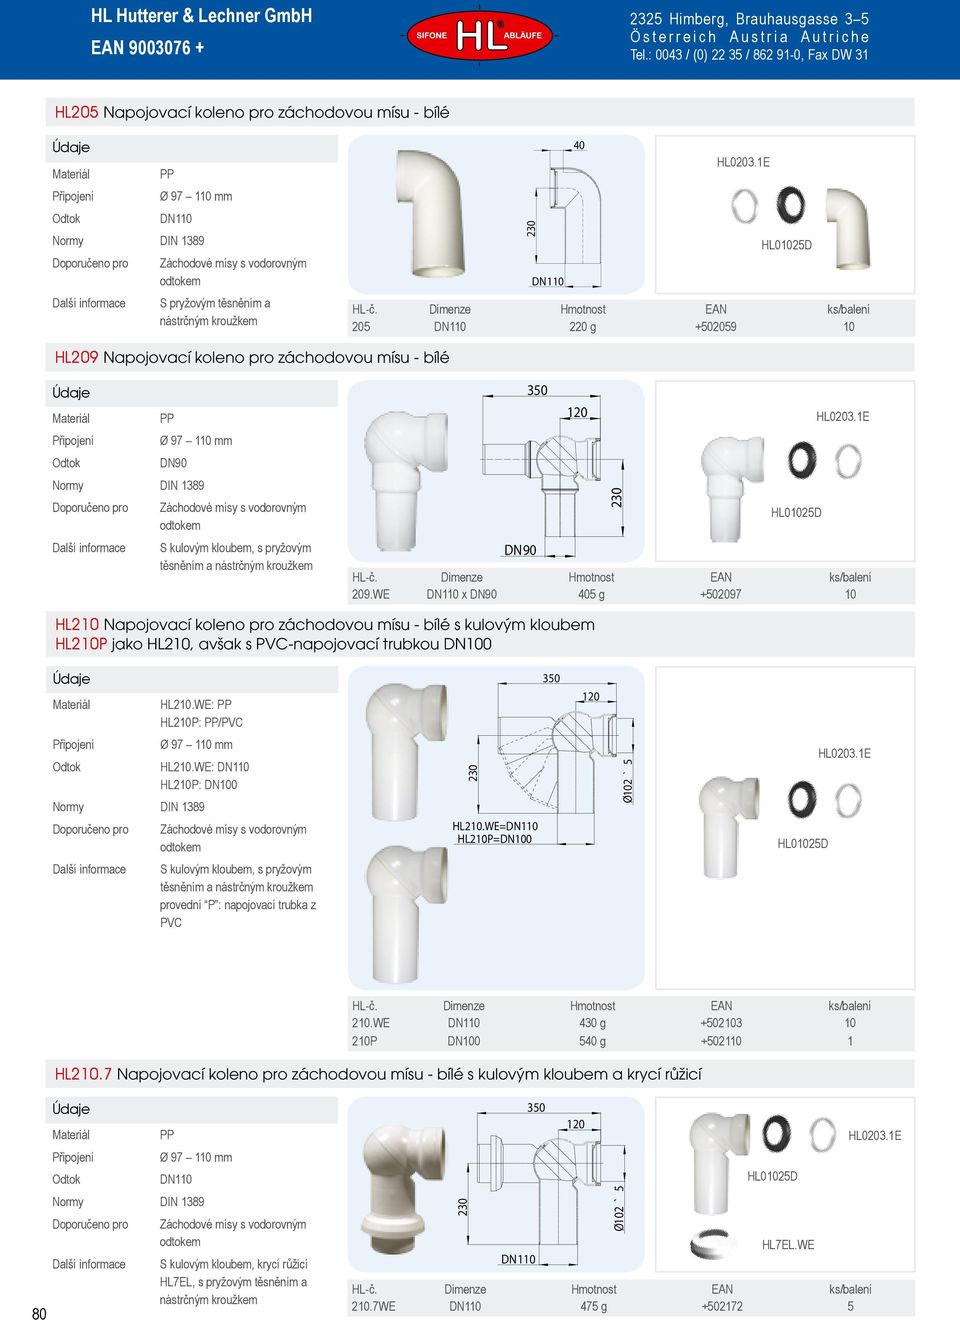 WE x 405 g +502097 10 HL210 Napojovací koleno pro záchodovou mísu - bílé s kulovým kloubem HL210P jako HL210, avšak s PVC-napojovací trubkou DN100 HL210.WE: HL210P: /PVC 350 HL210.